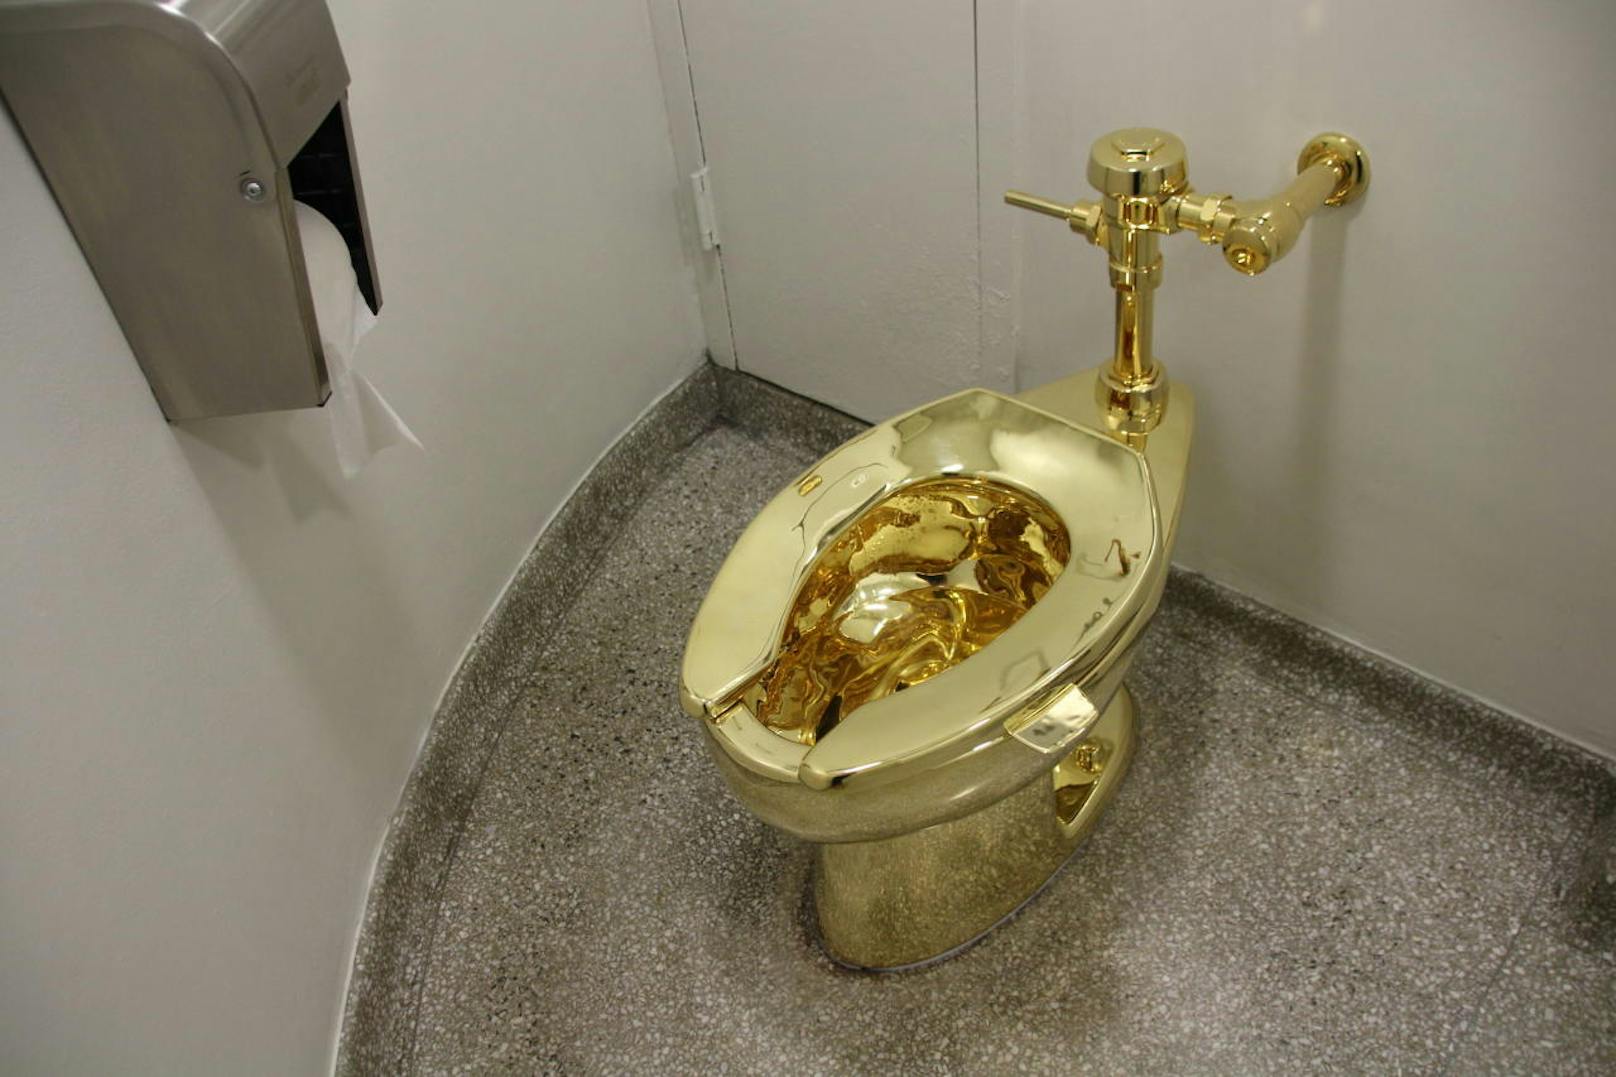 Es handelt sich um das Werk "America" des italienischen Künstlers Maurizio Cattelan, eine voll funktionsfähige 18-Karat-Goldtoilette.